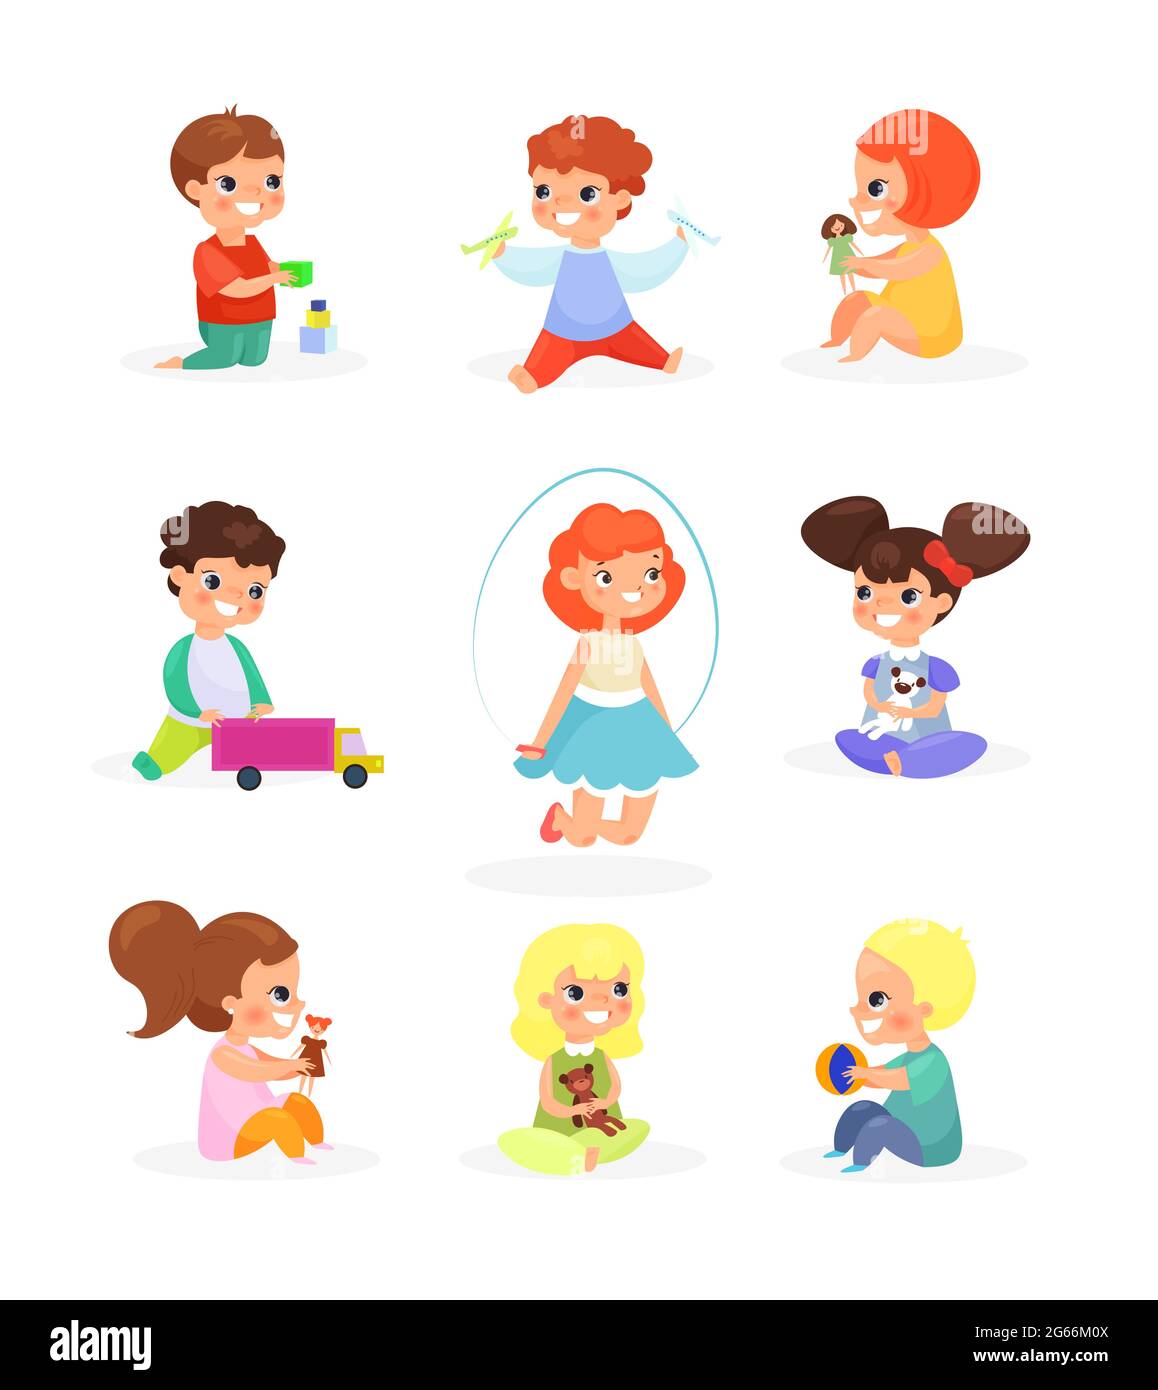 Illustrazione vettoriale insieme di bambini carini che giocano con giocattoli, bambole, saltando, sorridendo. Felici i bambini che si divertono, cartone animato in stile piatto. Illustrazione Vettoriale